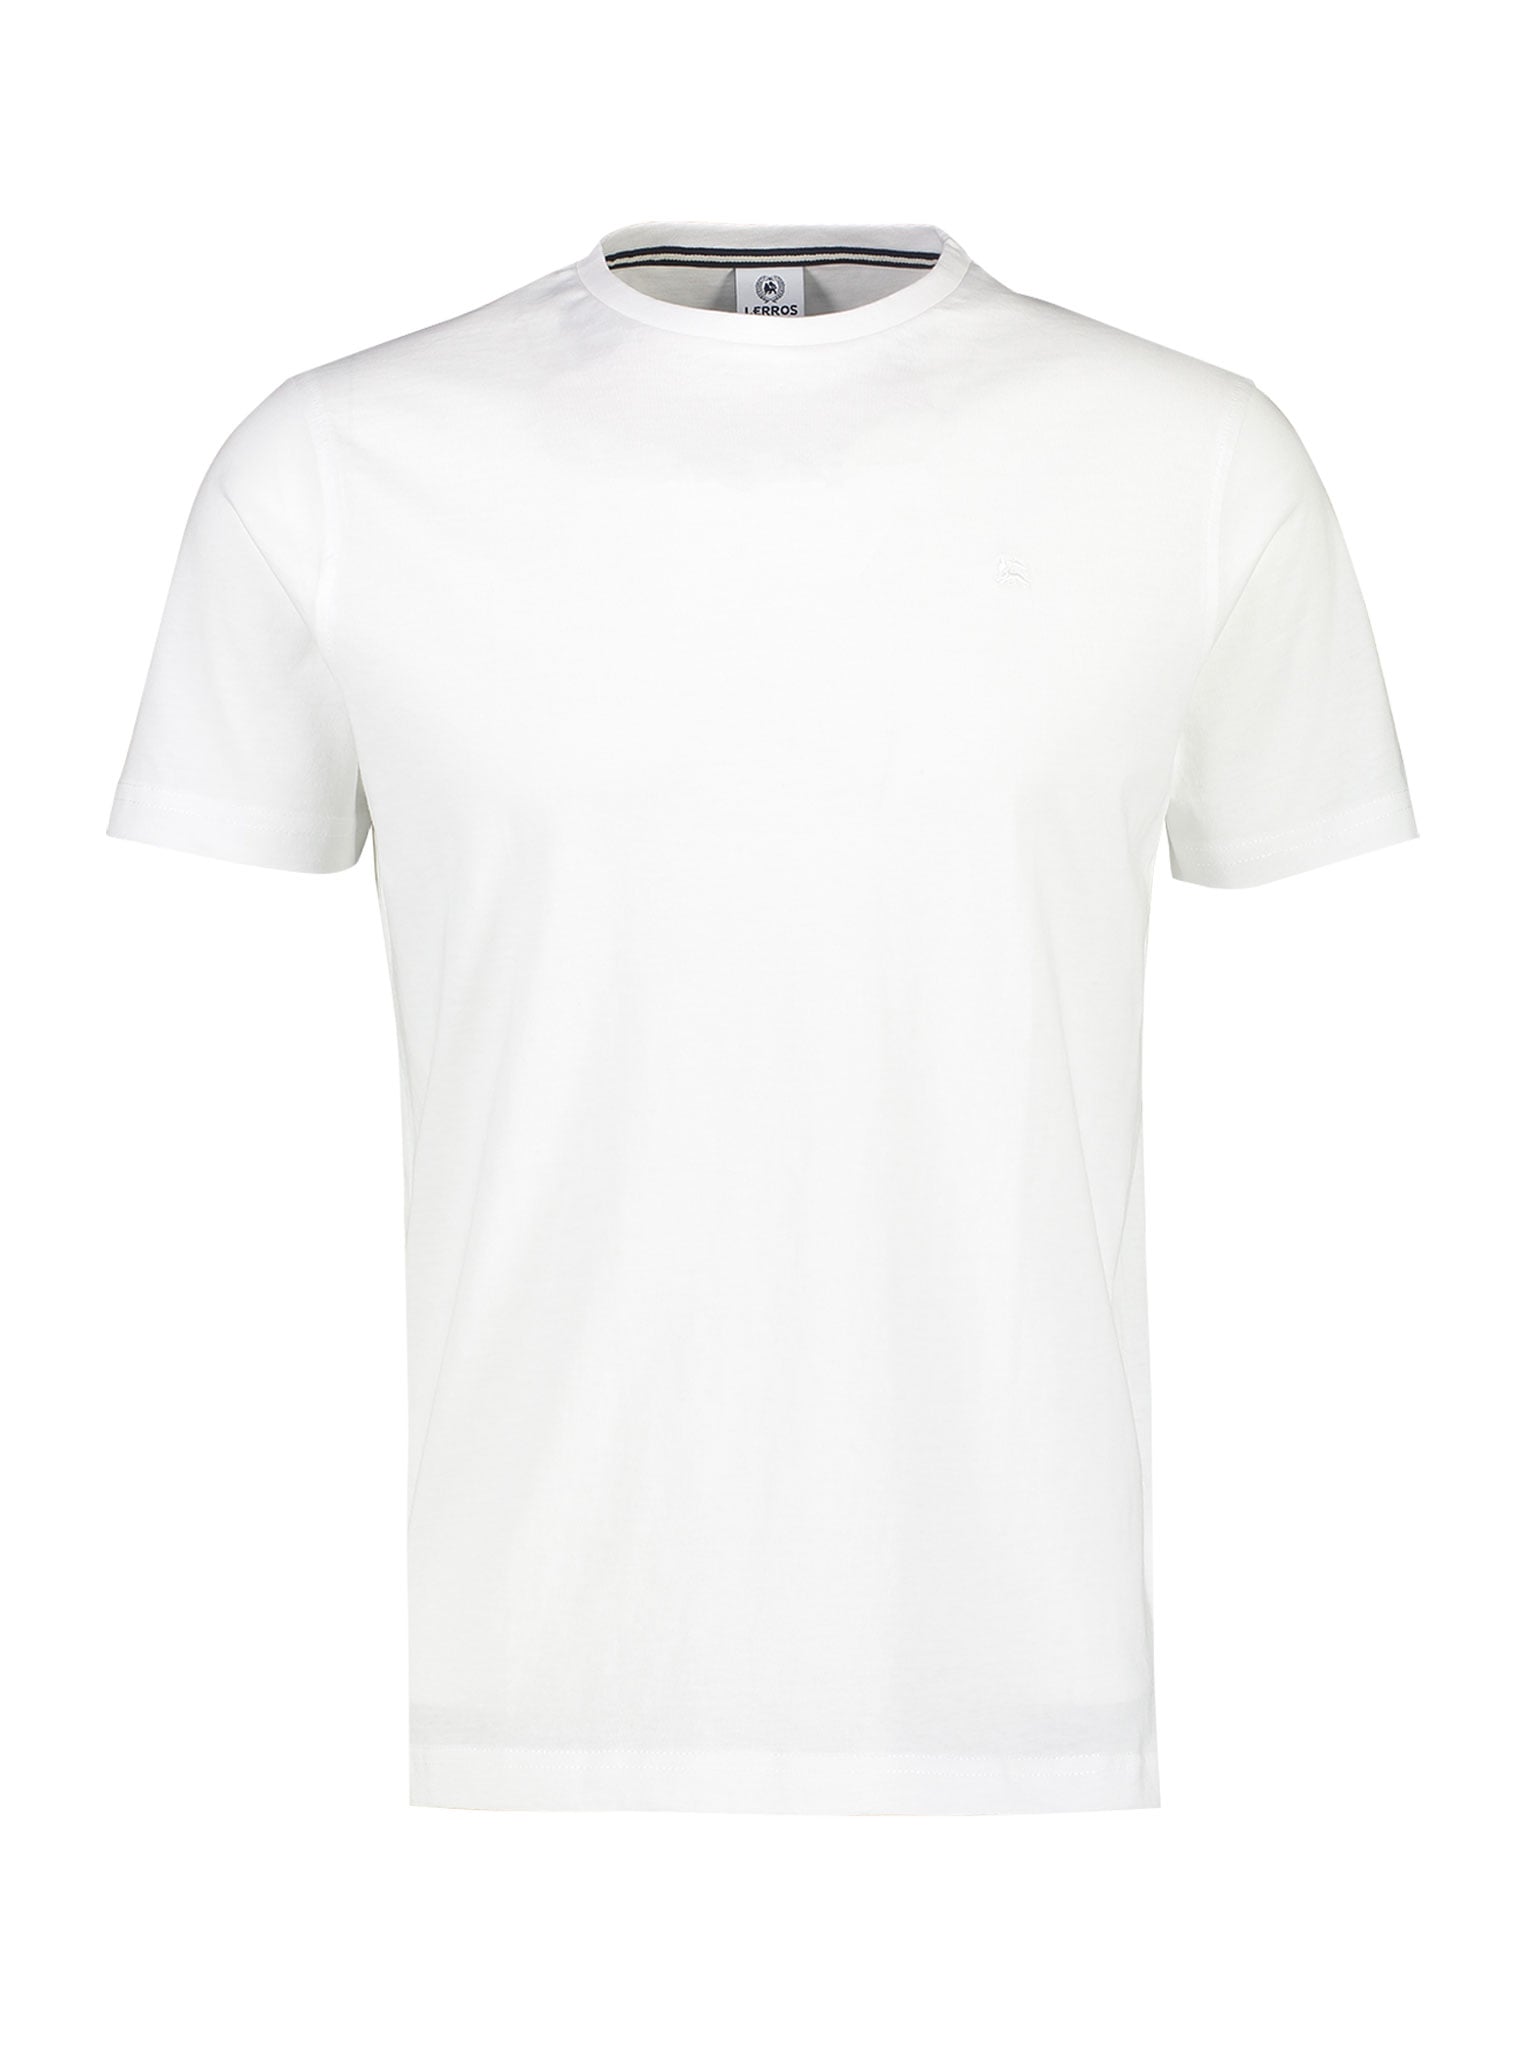 T-Shirt, im Basic-Look